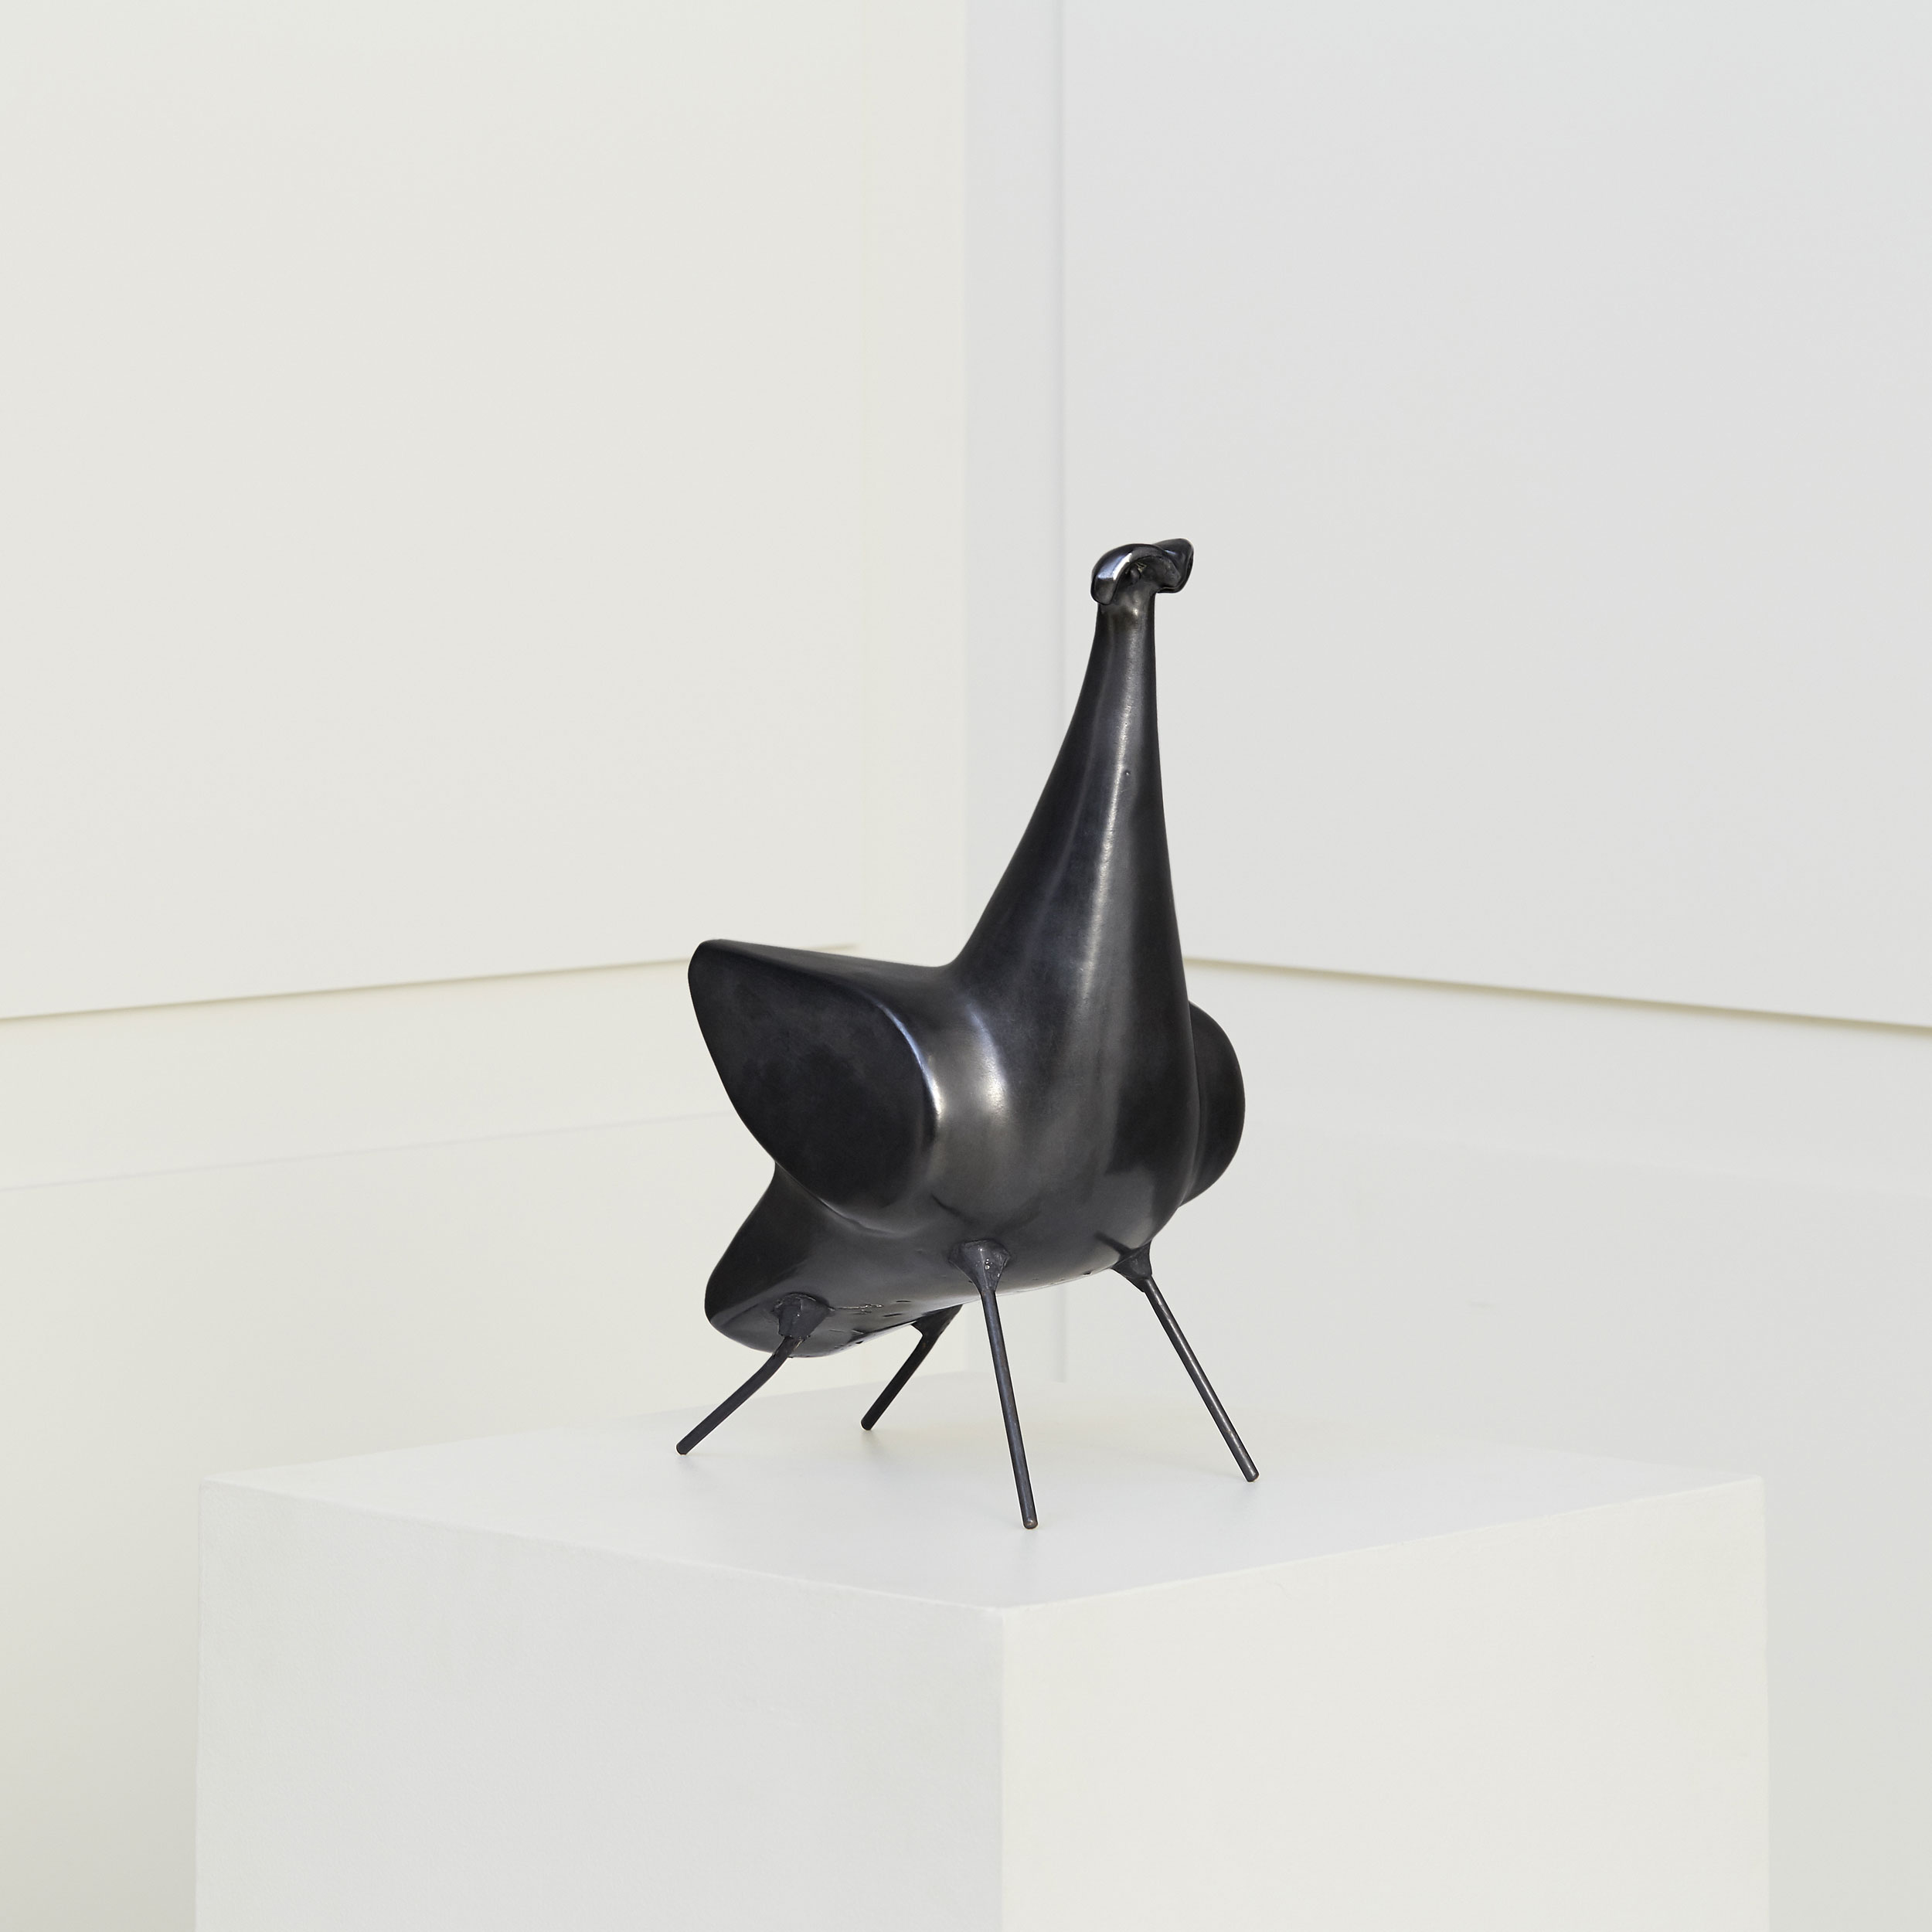 Georges Jouve, Sculpture en céramique «Oiseau 4 pattes», vue 03